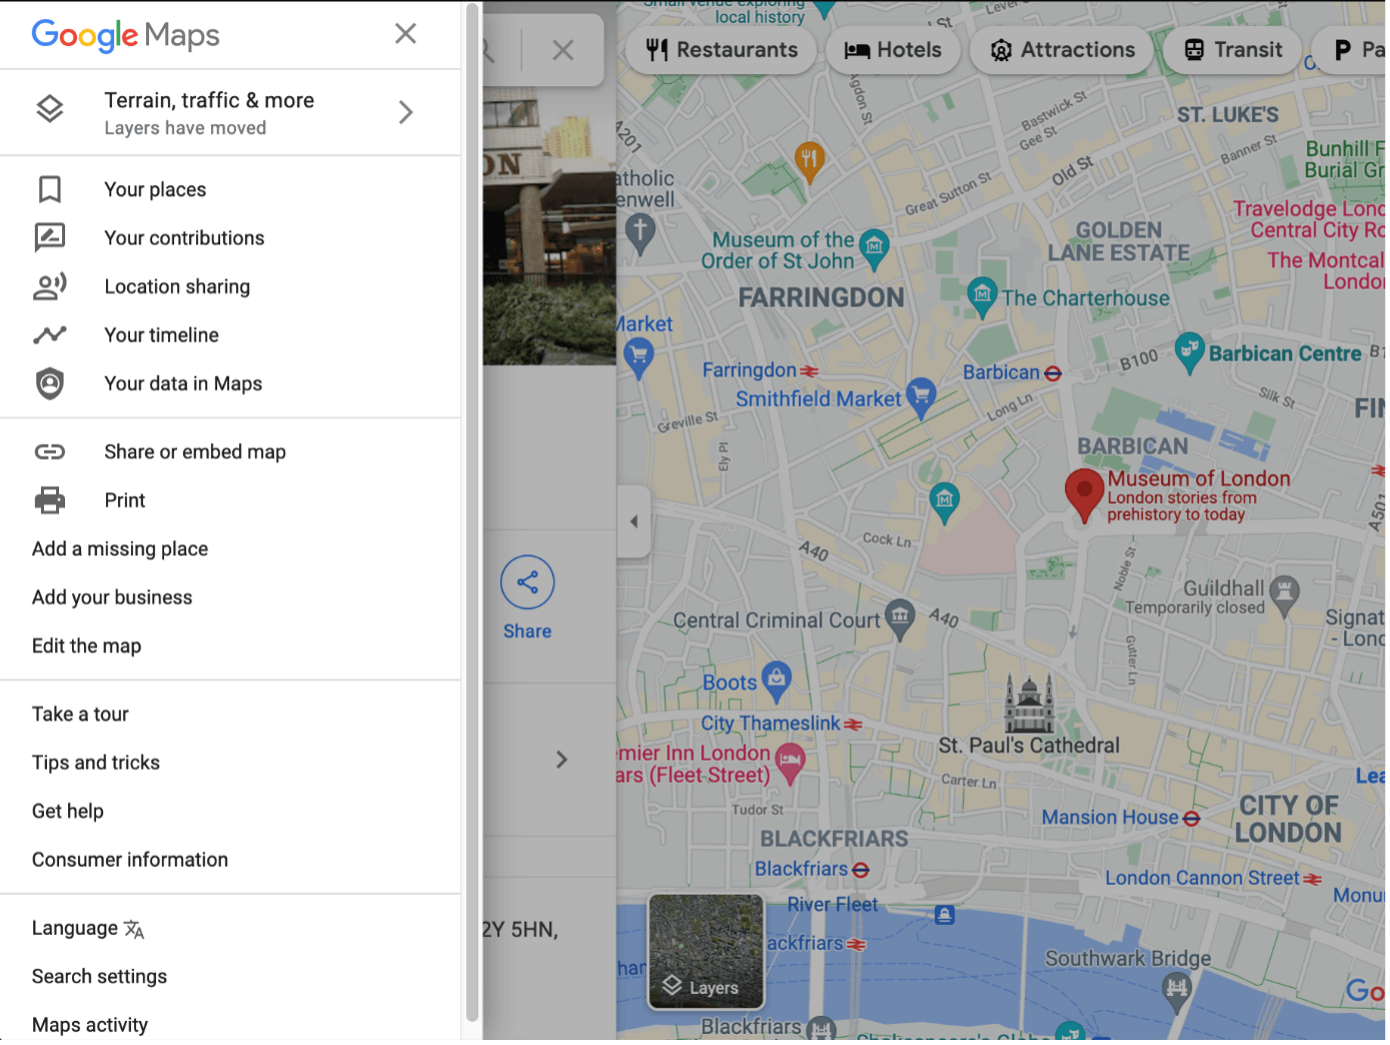 Captura de pantalla de un mapa de Google Maps con el menú desplegado